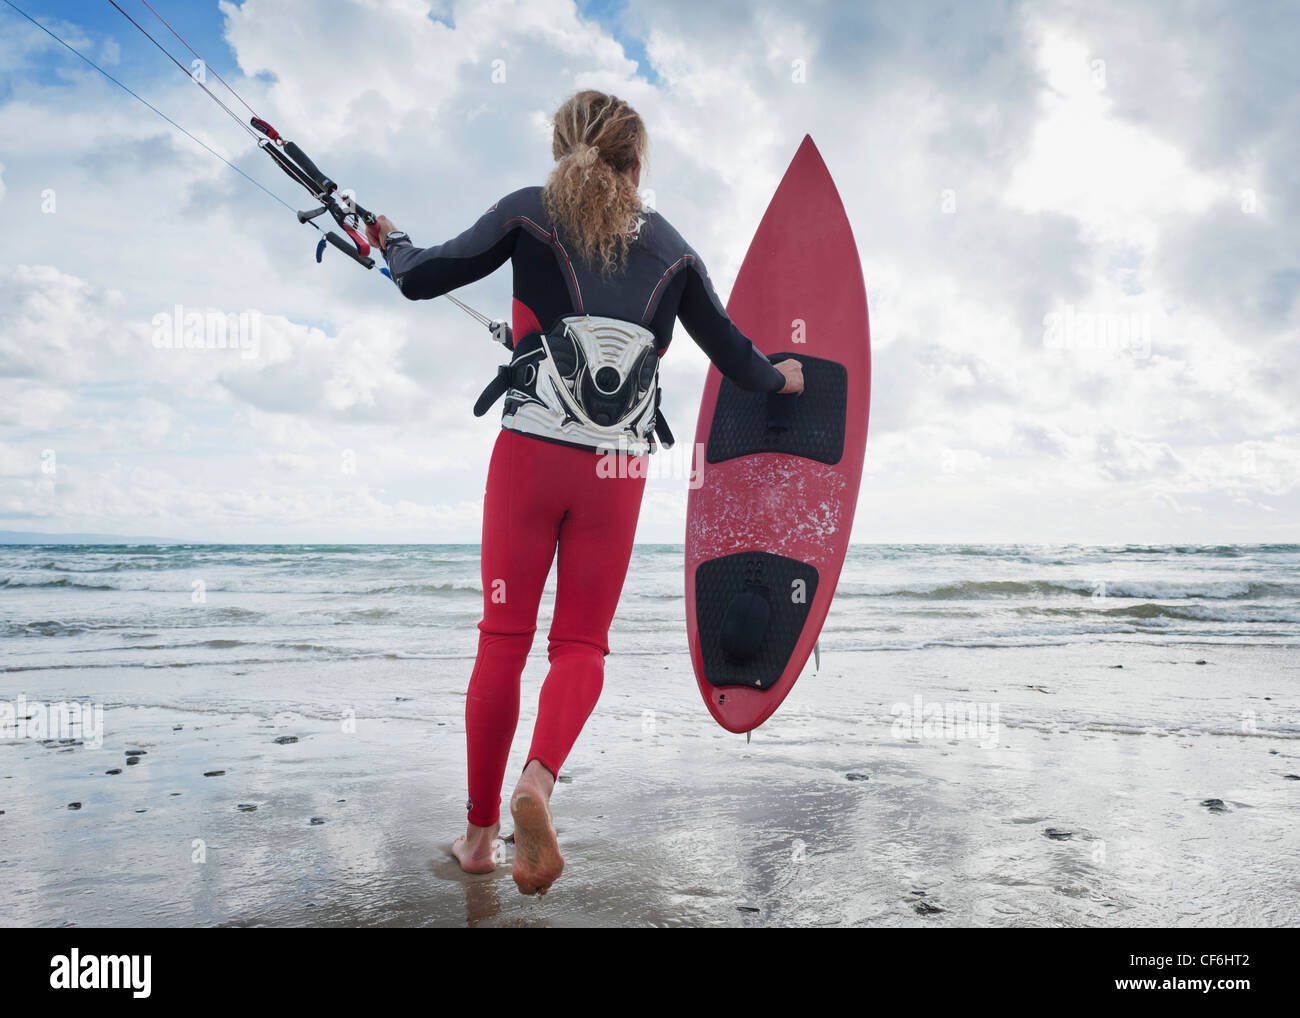 Une jeune femme avec son équipement pour le kite surf sur la plage Dos Mares, Tarifa Cadiz Andalousie Espagne Banque D'Images